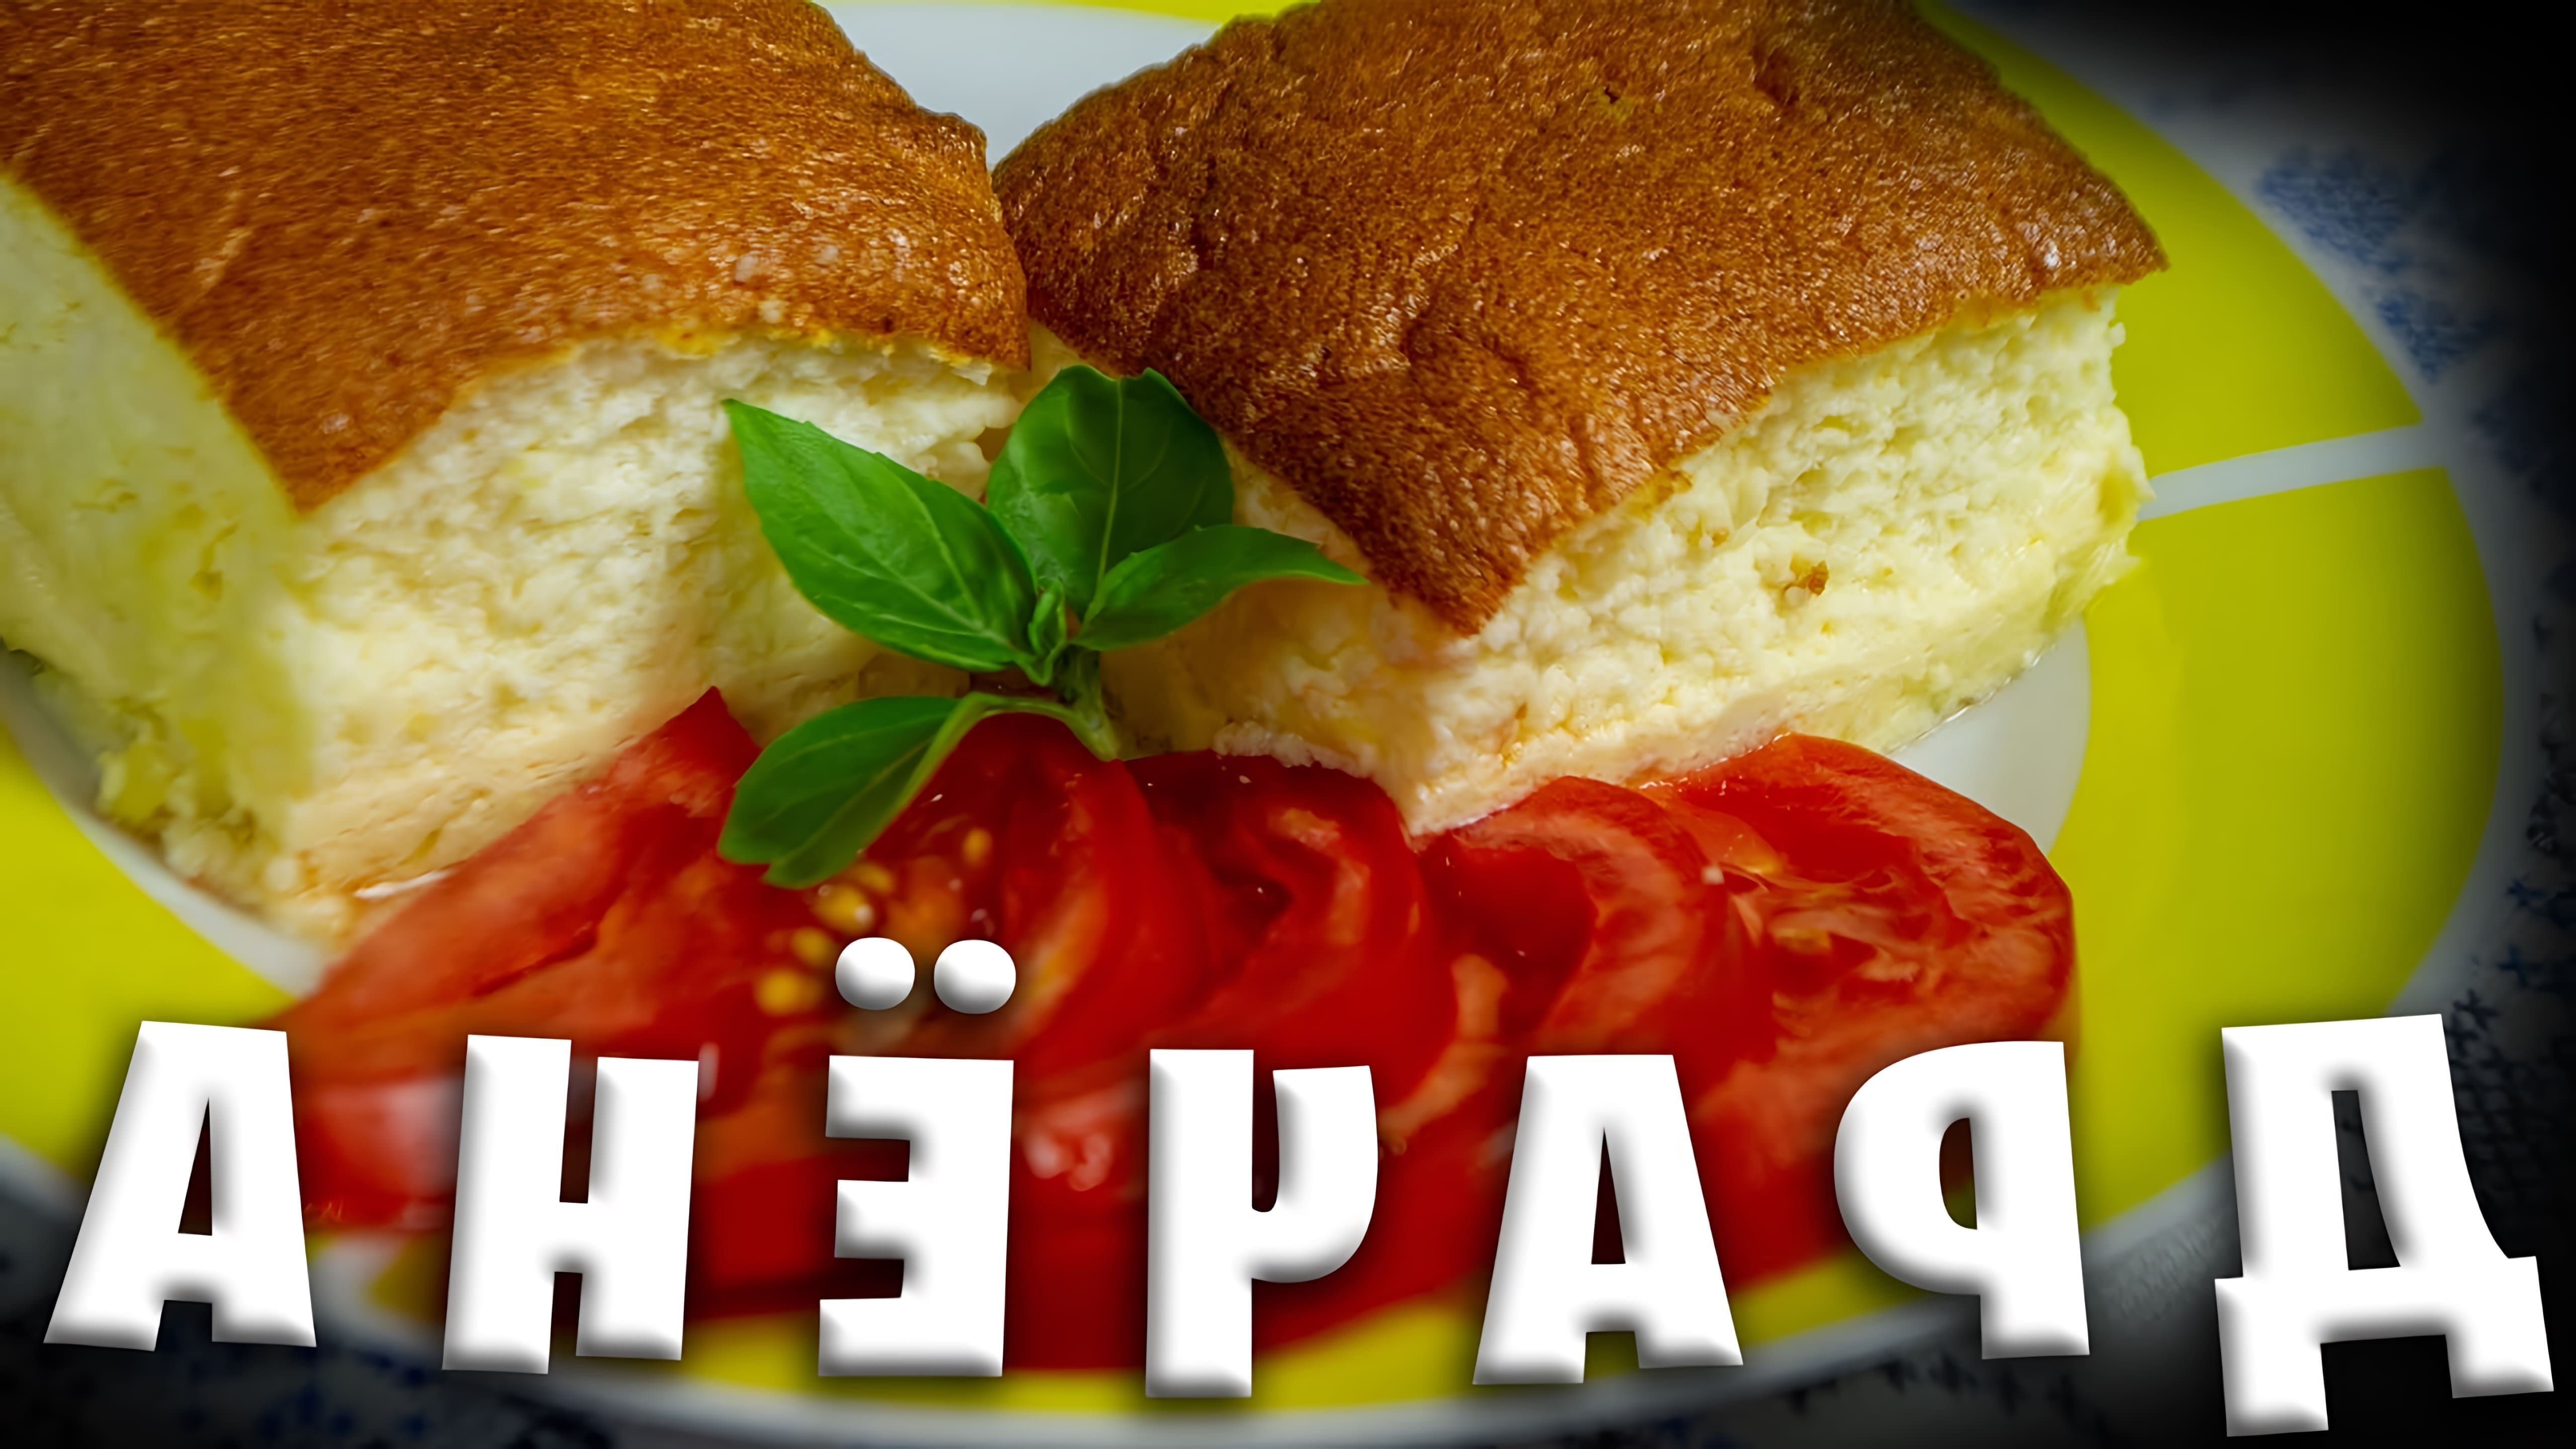 В этом видео демонстрируется процесс приготовления белорусского блюда "Драчёна" или "Картофельный омлет"